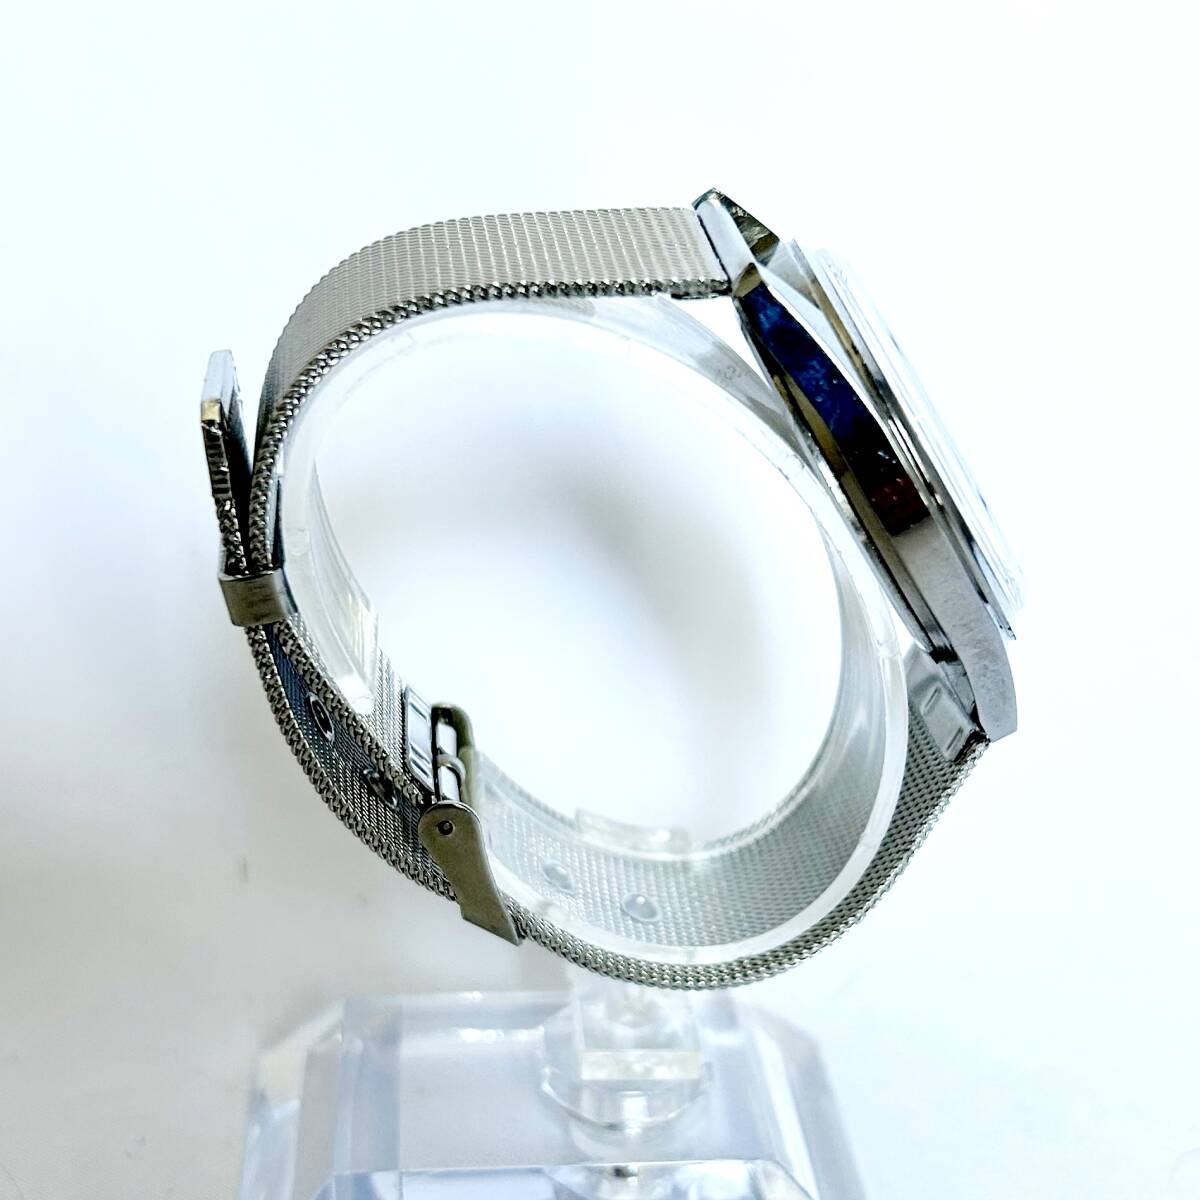 スイスの老舗ブランドORIS 紳士用腕時計 ブルーダイアル シルバーボディー ヴィンテージ 手巻機械式 35mm ステンレスベルト 17石 ST-96の画像5